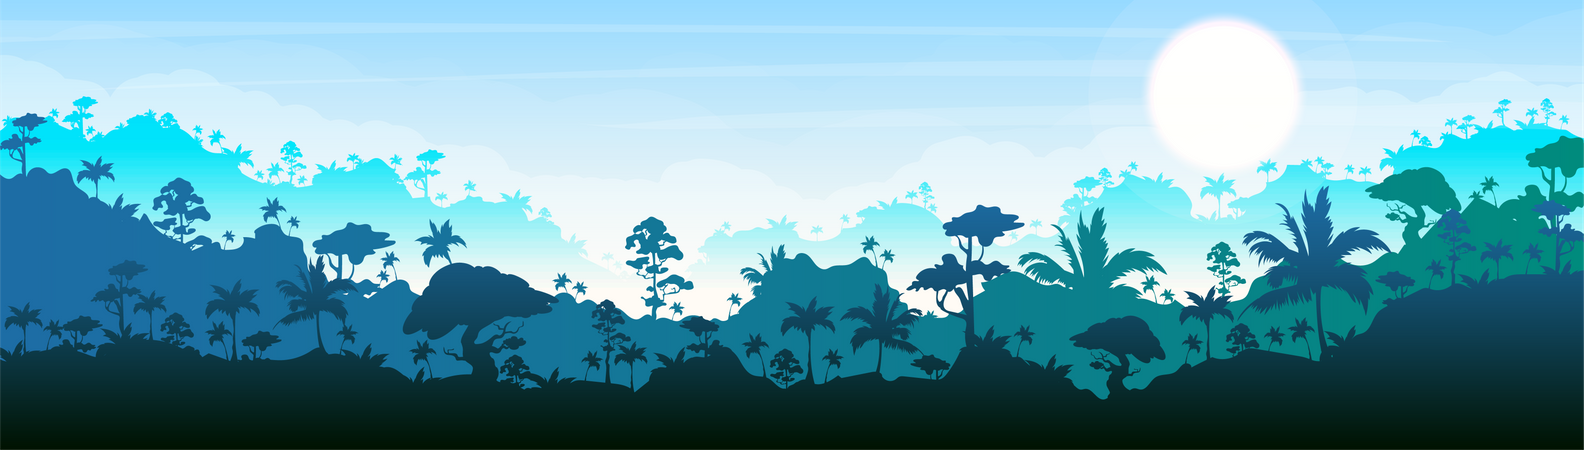 Paisaje del bosque azul  Ilustración